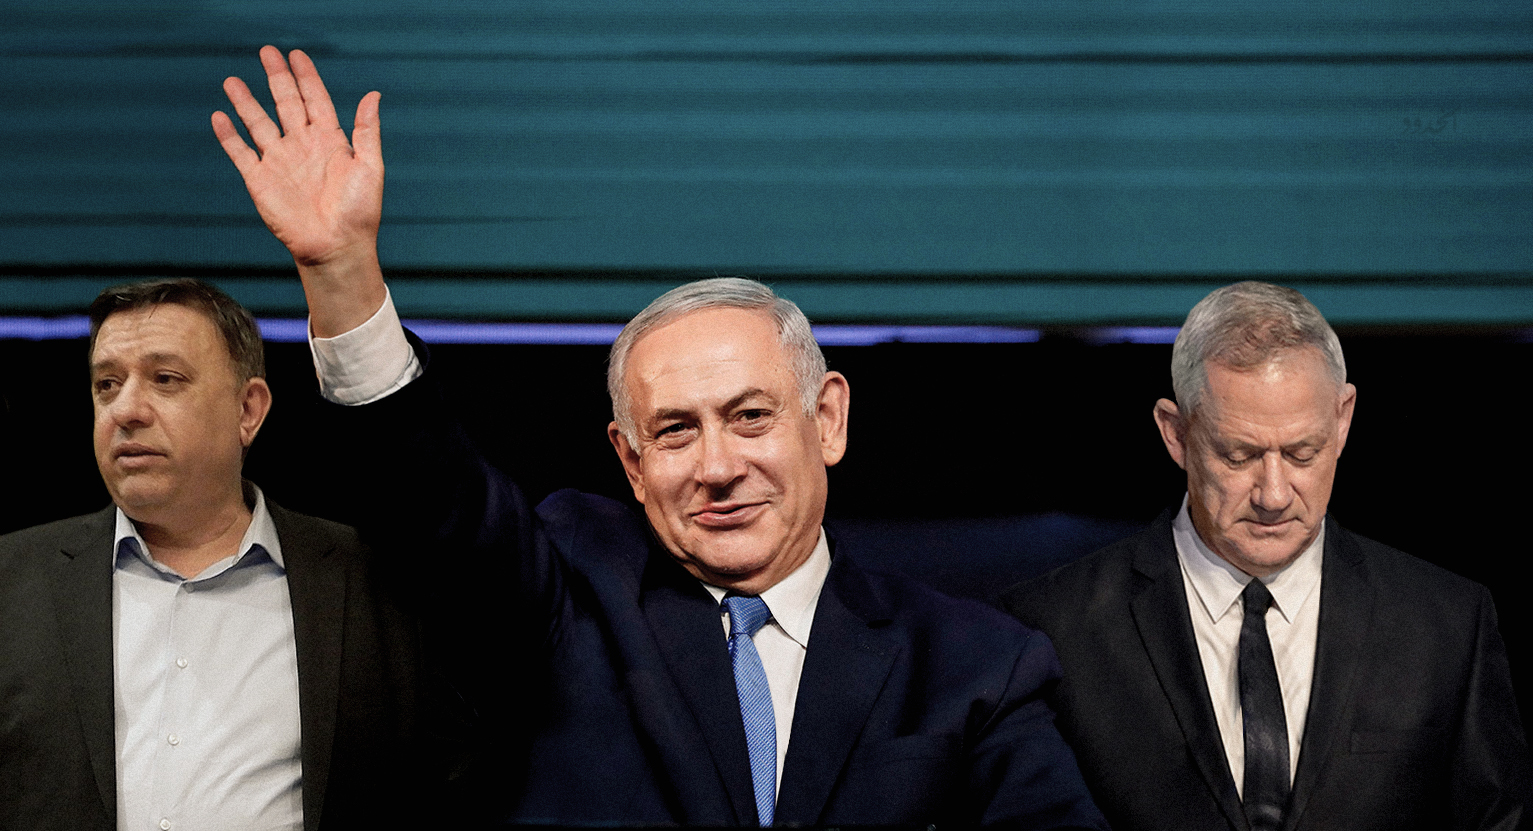 صورة الانتخابات الإسرائيلية: فوز اليمين اليميني بفارق بسيط عن اليمين بعض الشيء وانتكاسة لليمين اليساري